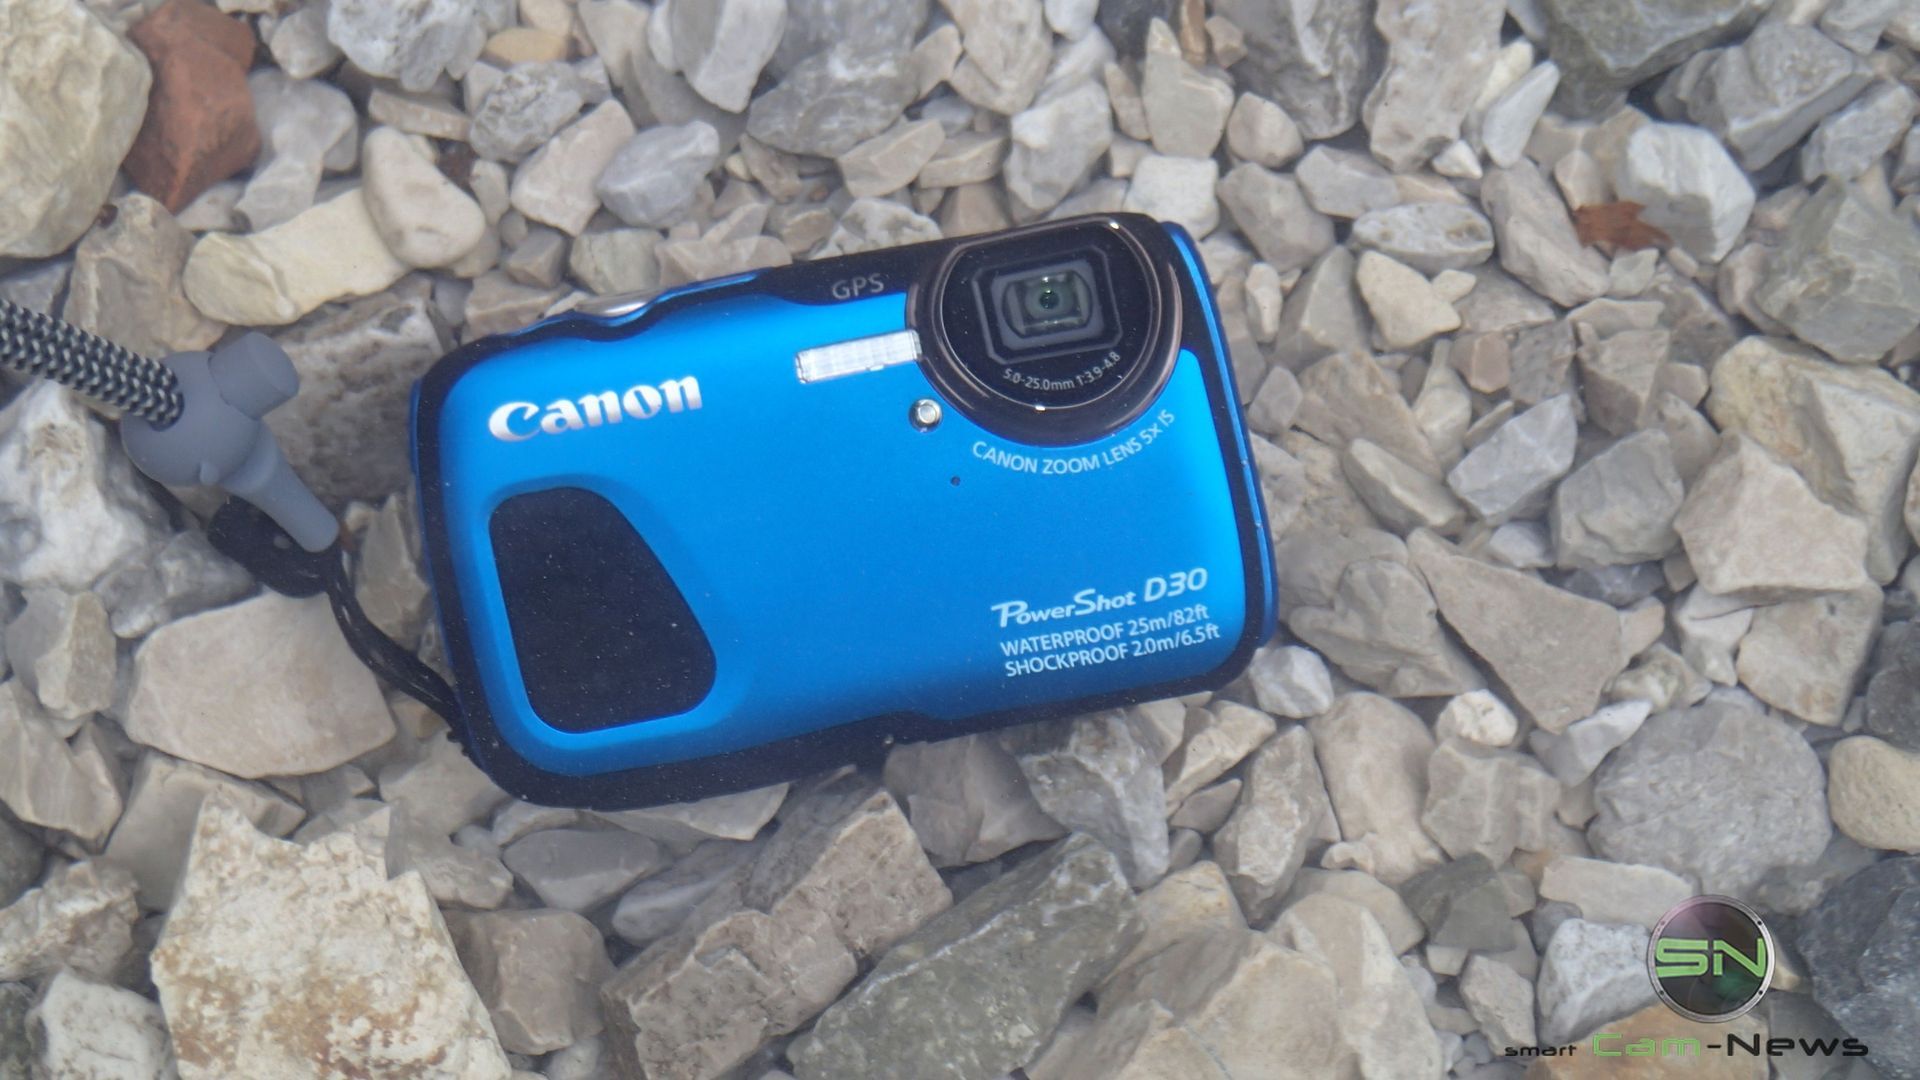 Praxistest - Canon D30 - SmartCamNewsPraxistest - Canon D30 - SmartCamNews